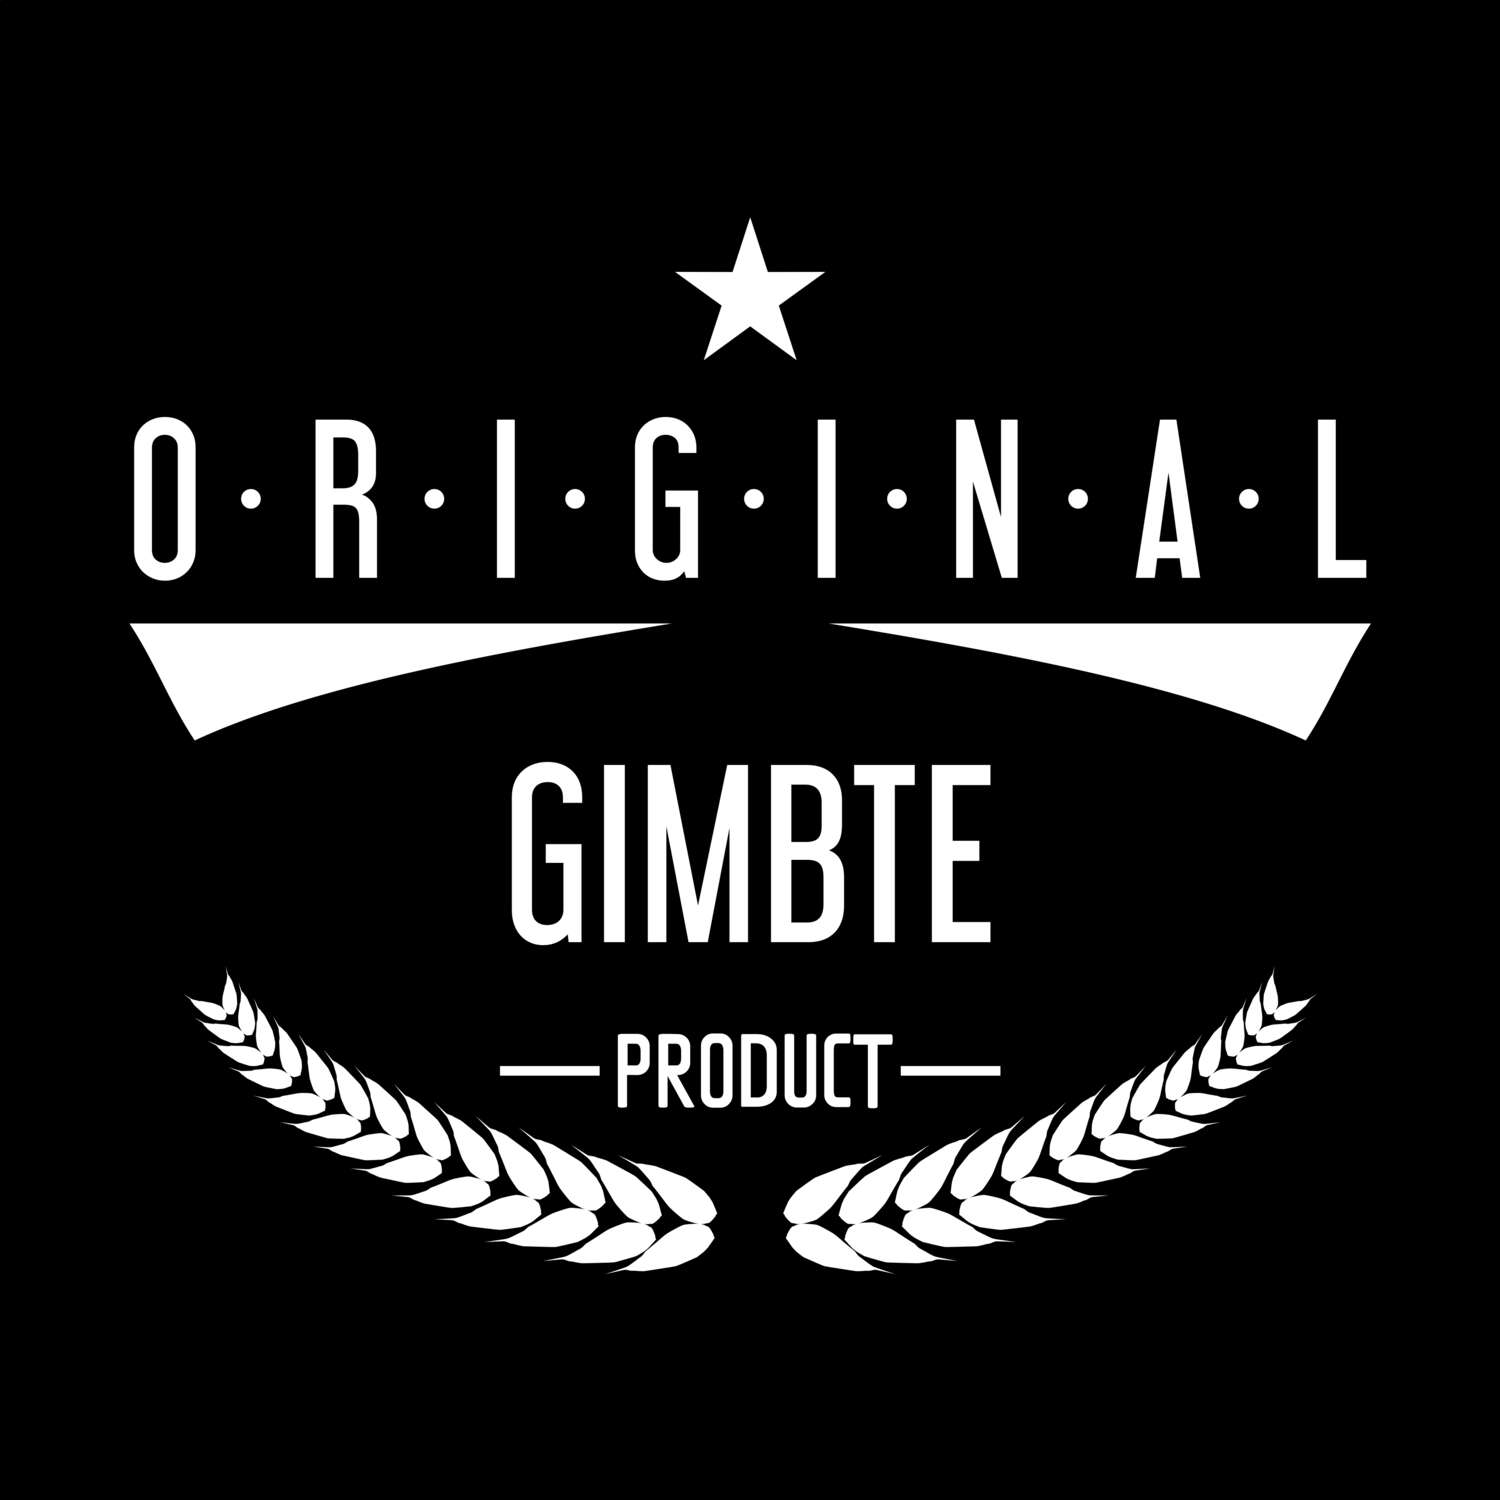 Gimbte T-Shirt »Original Product«